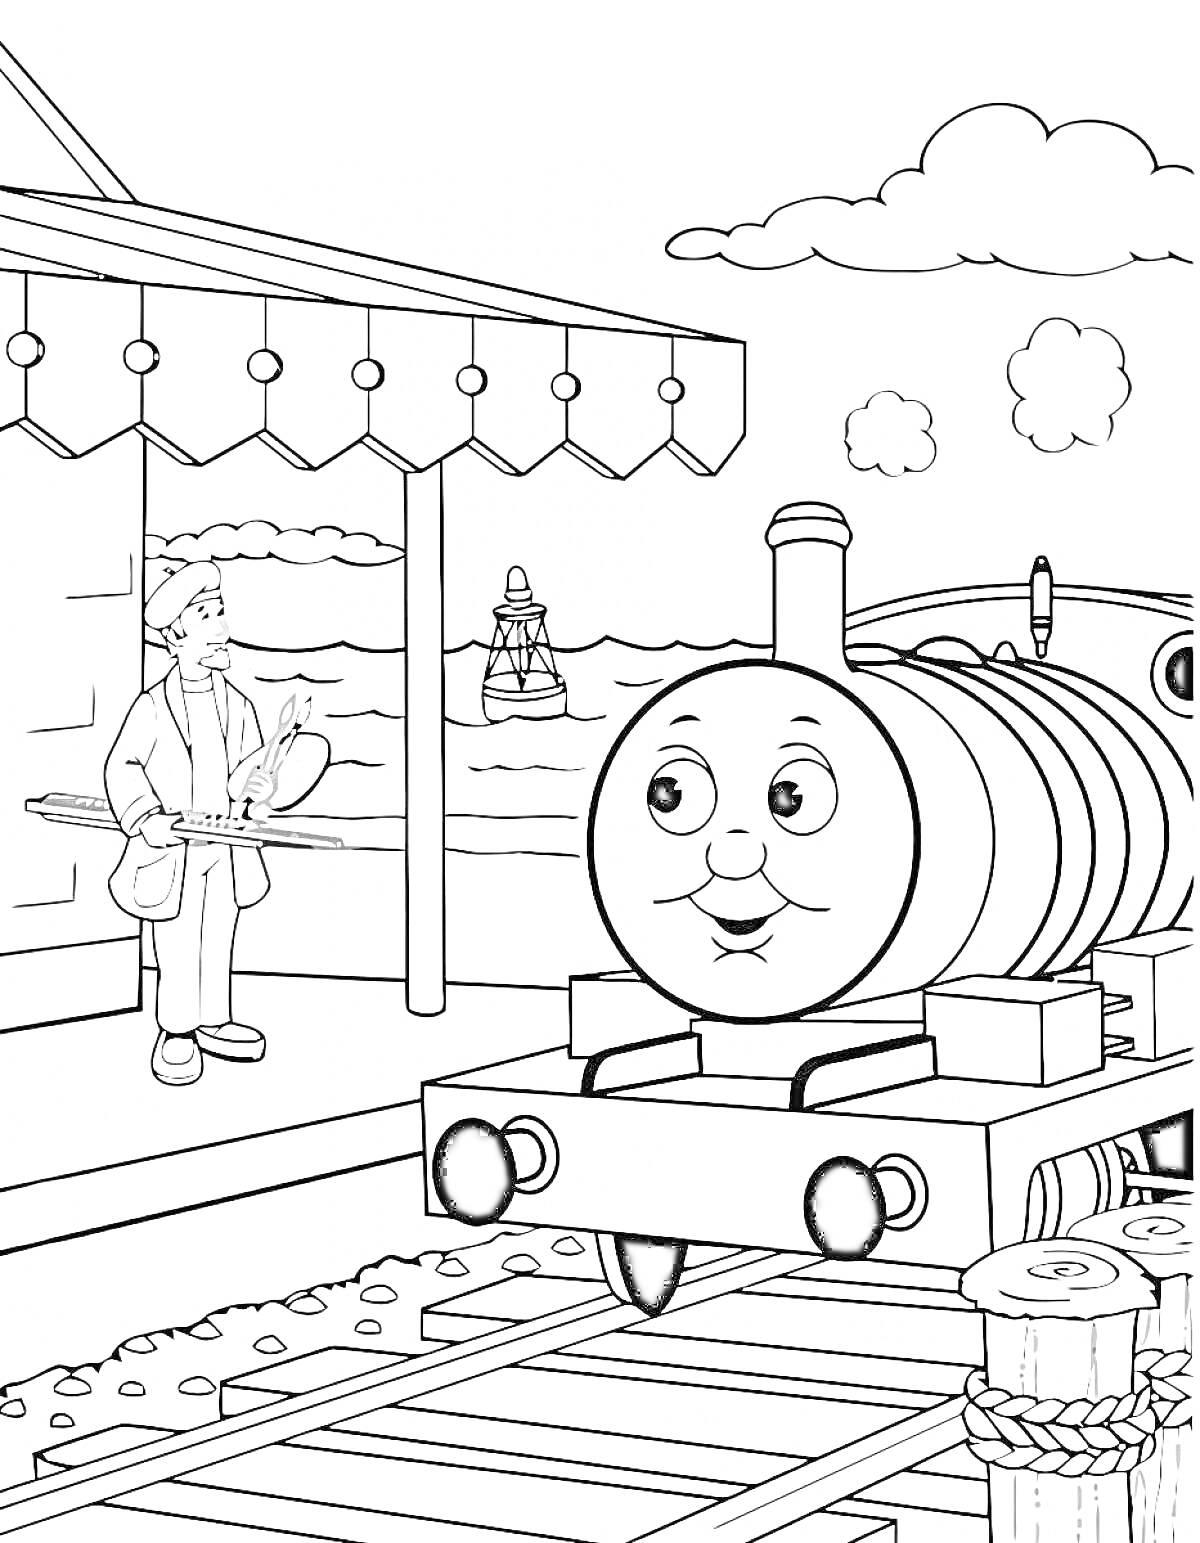 Раскраска Паровозик Томас на вокзале с рабочим и маяком на фоне